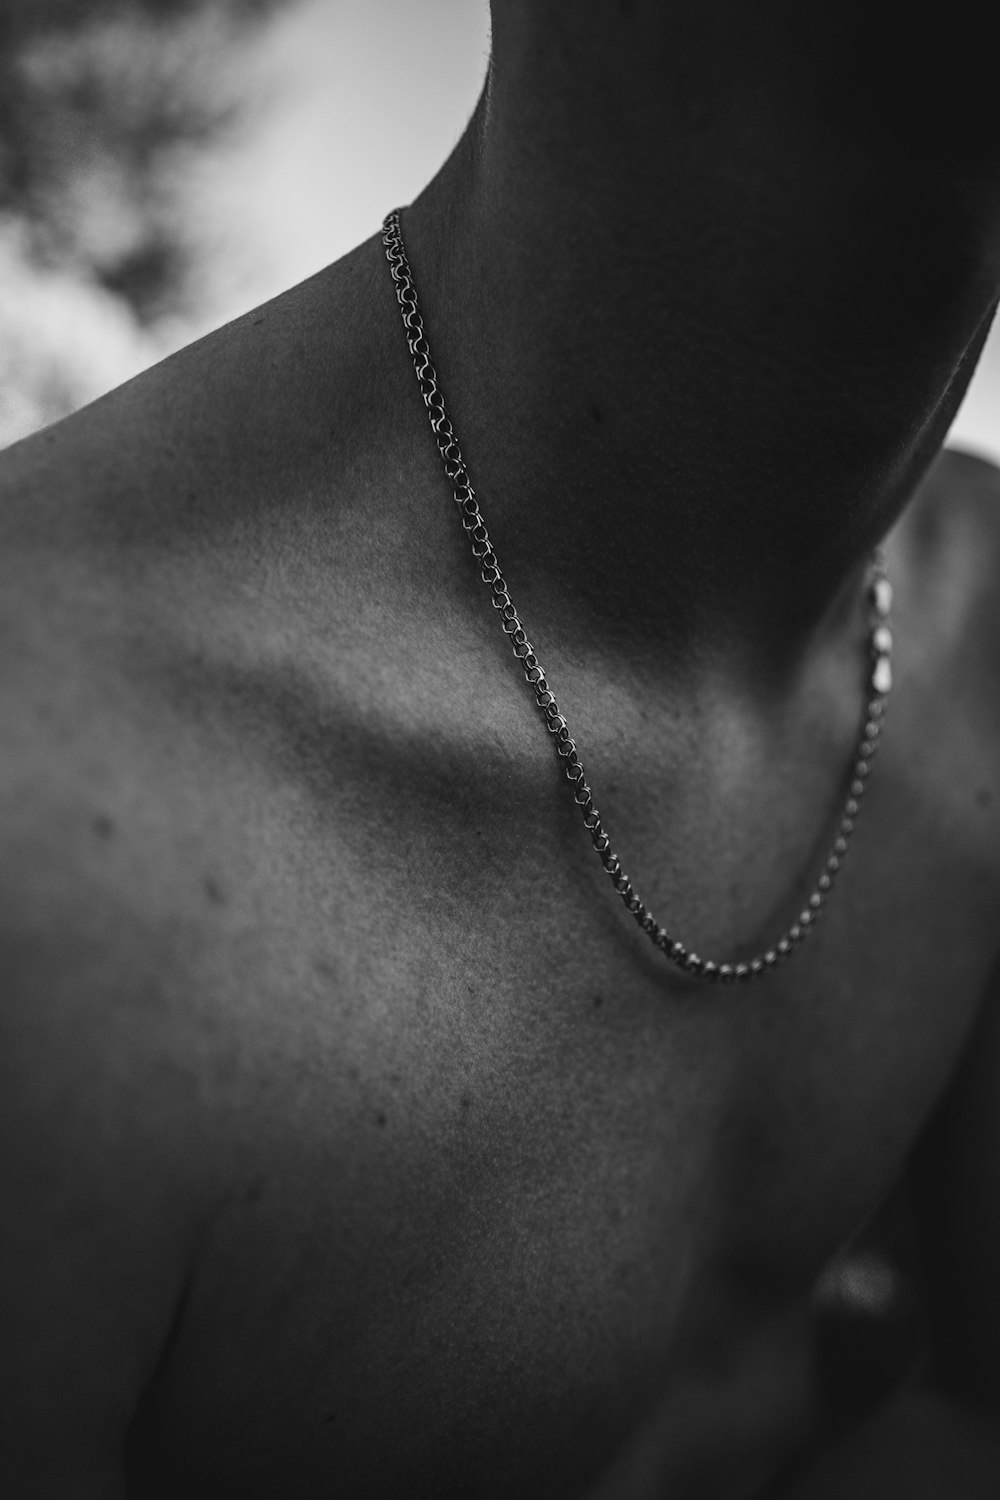 Schwarz-Weiß-Foto eines Mannes, der eine Halskette trägt